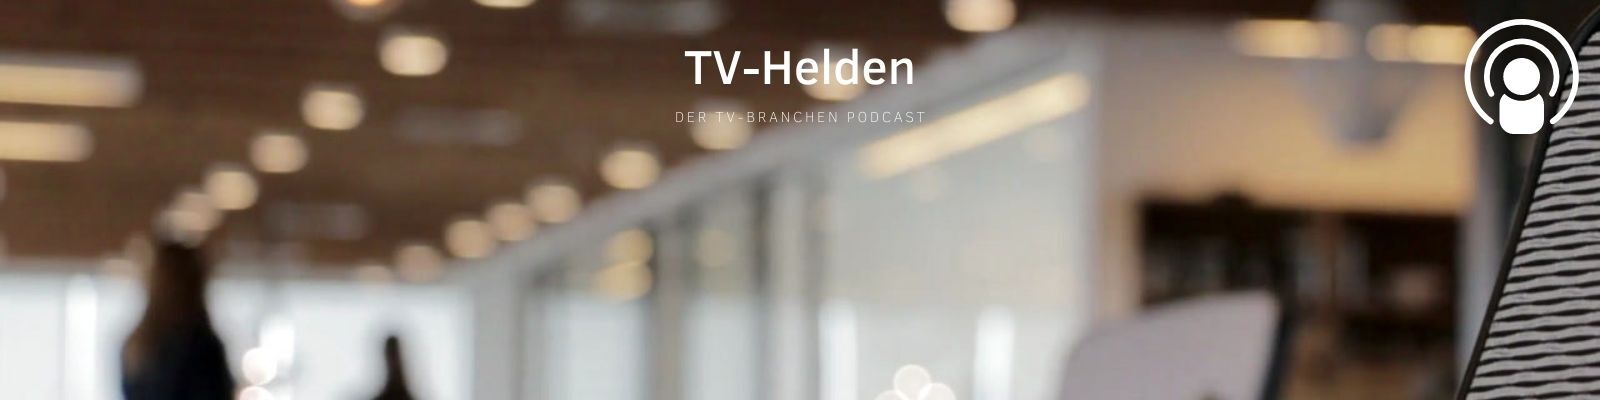 TV-Helden - der Branchen Podcast für alle die sich professionell mit Fernsehen beschäftigen